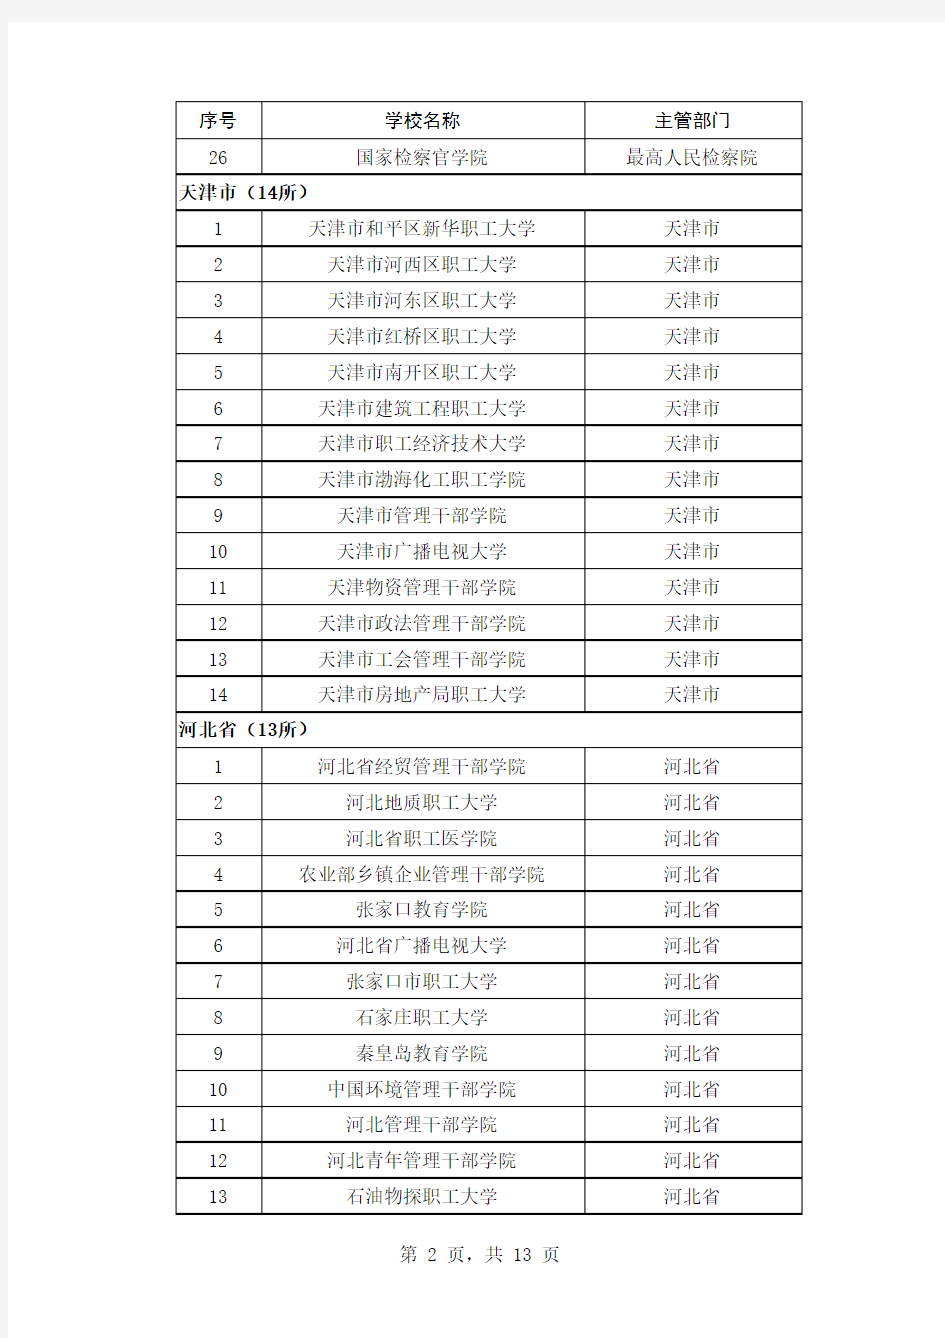 【最新官方版】全国成人高校名单(截至2012年4月24日)